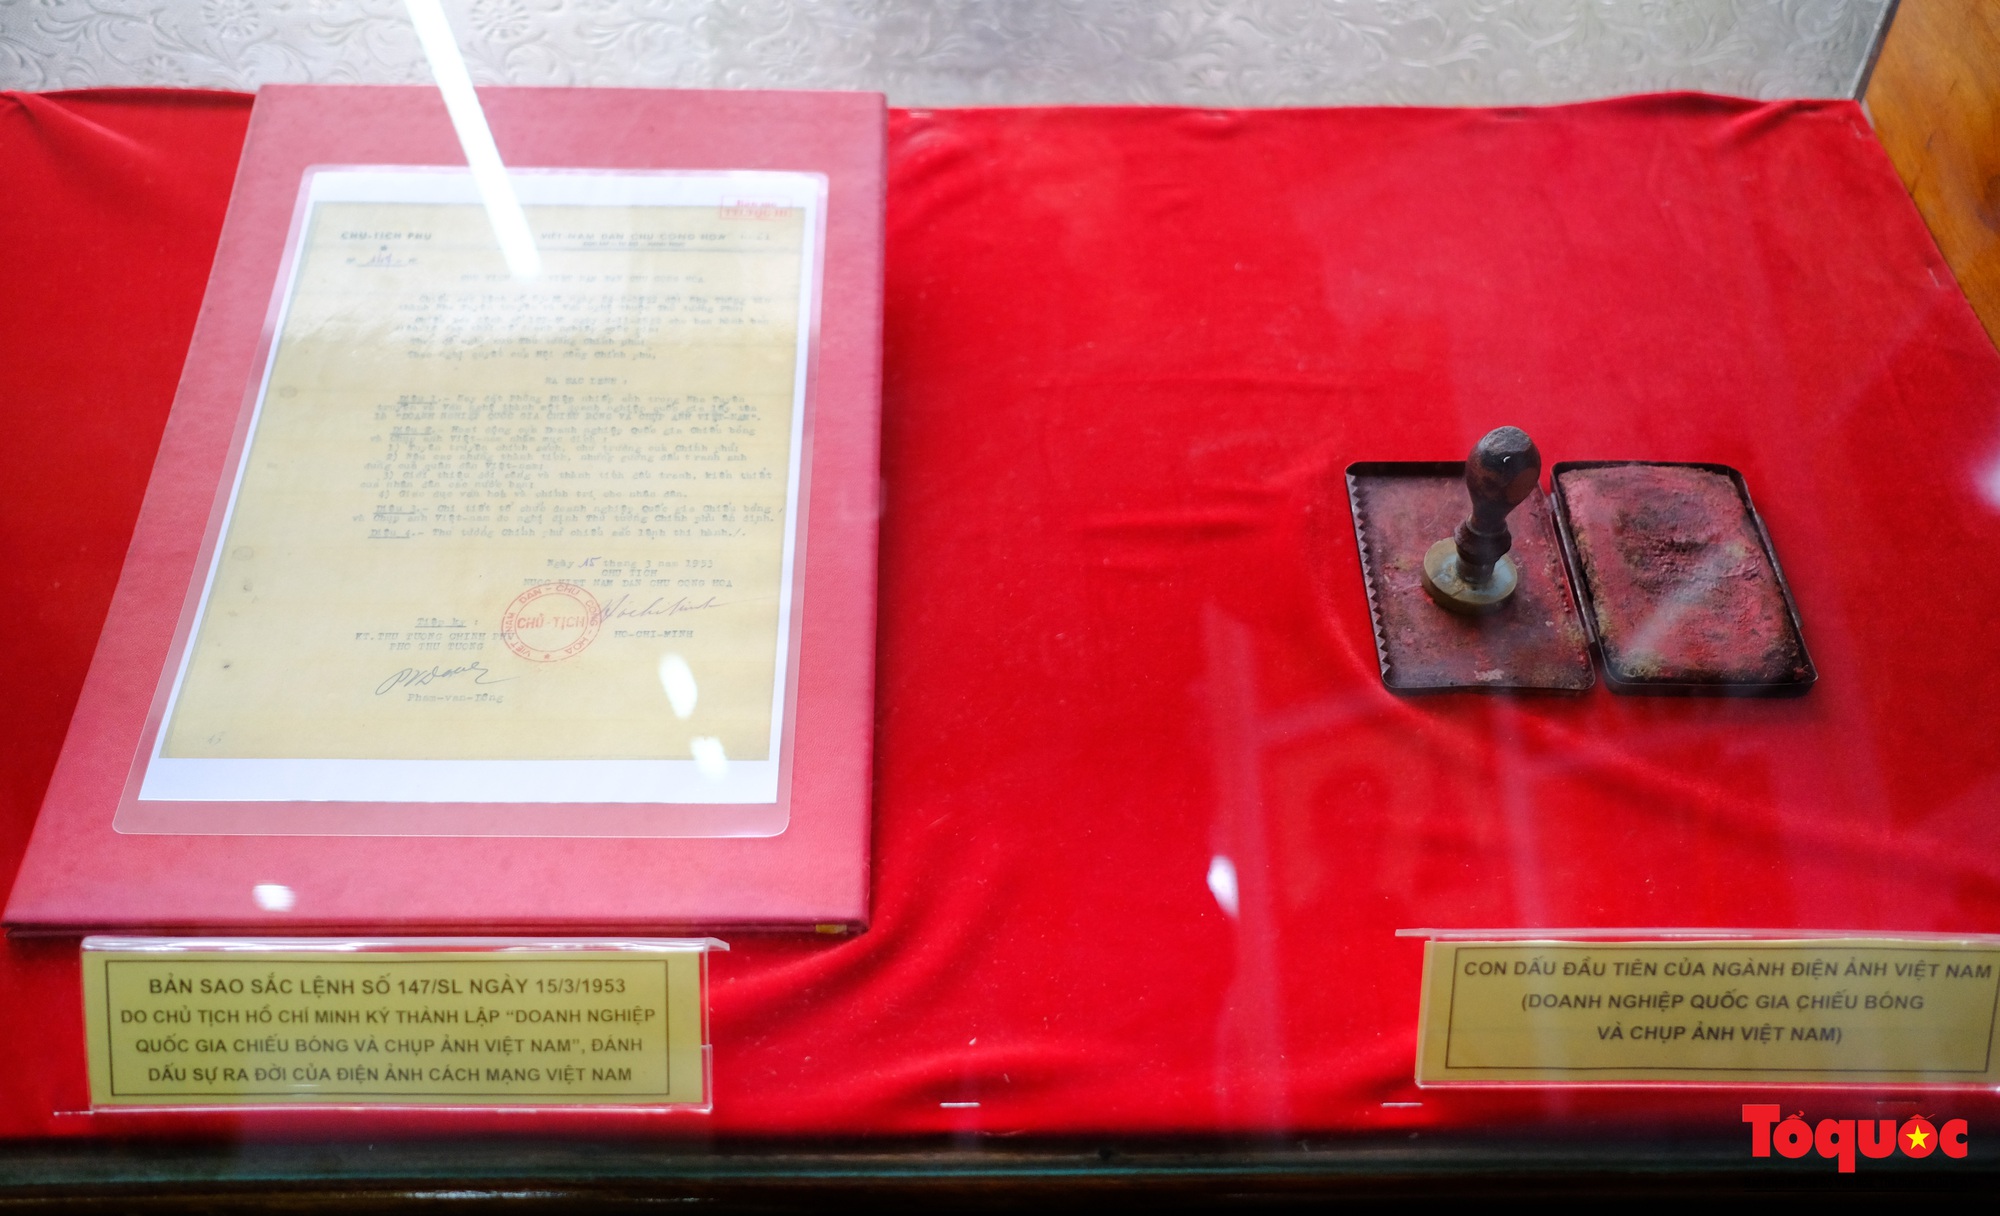 Hơn 200 tư liệu, hiện vật quý được trưng bày kỷ niệm 70 năm Điện ảnh Cách mạng Việt Nam - Ảnh 5.